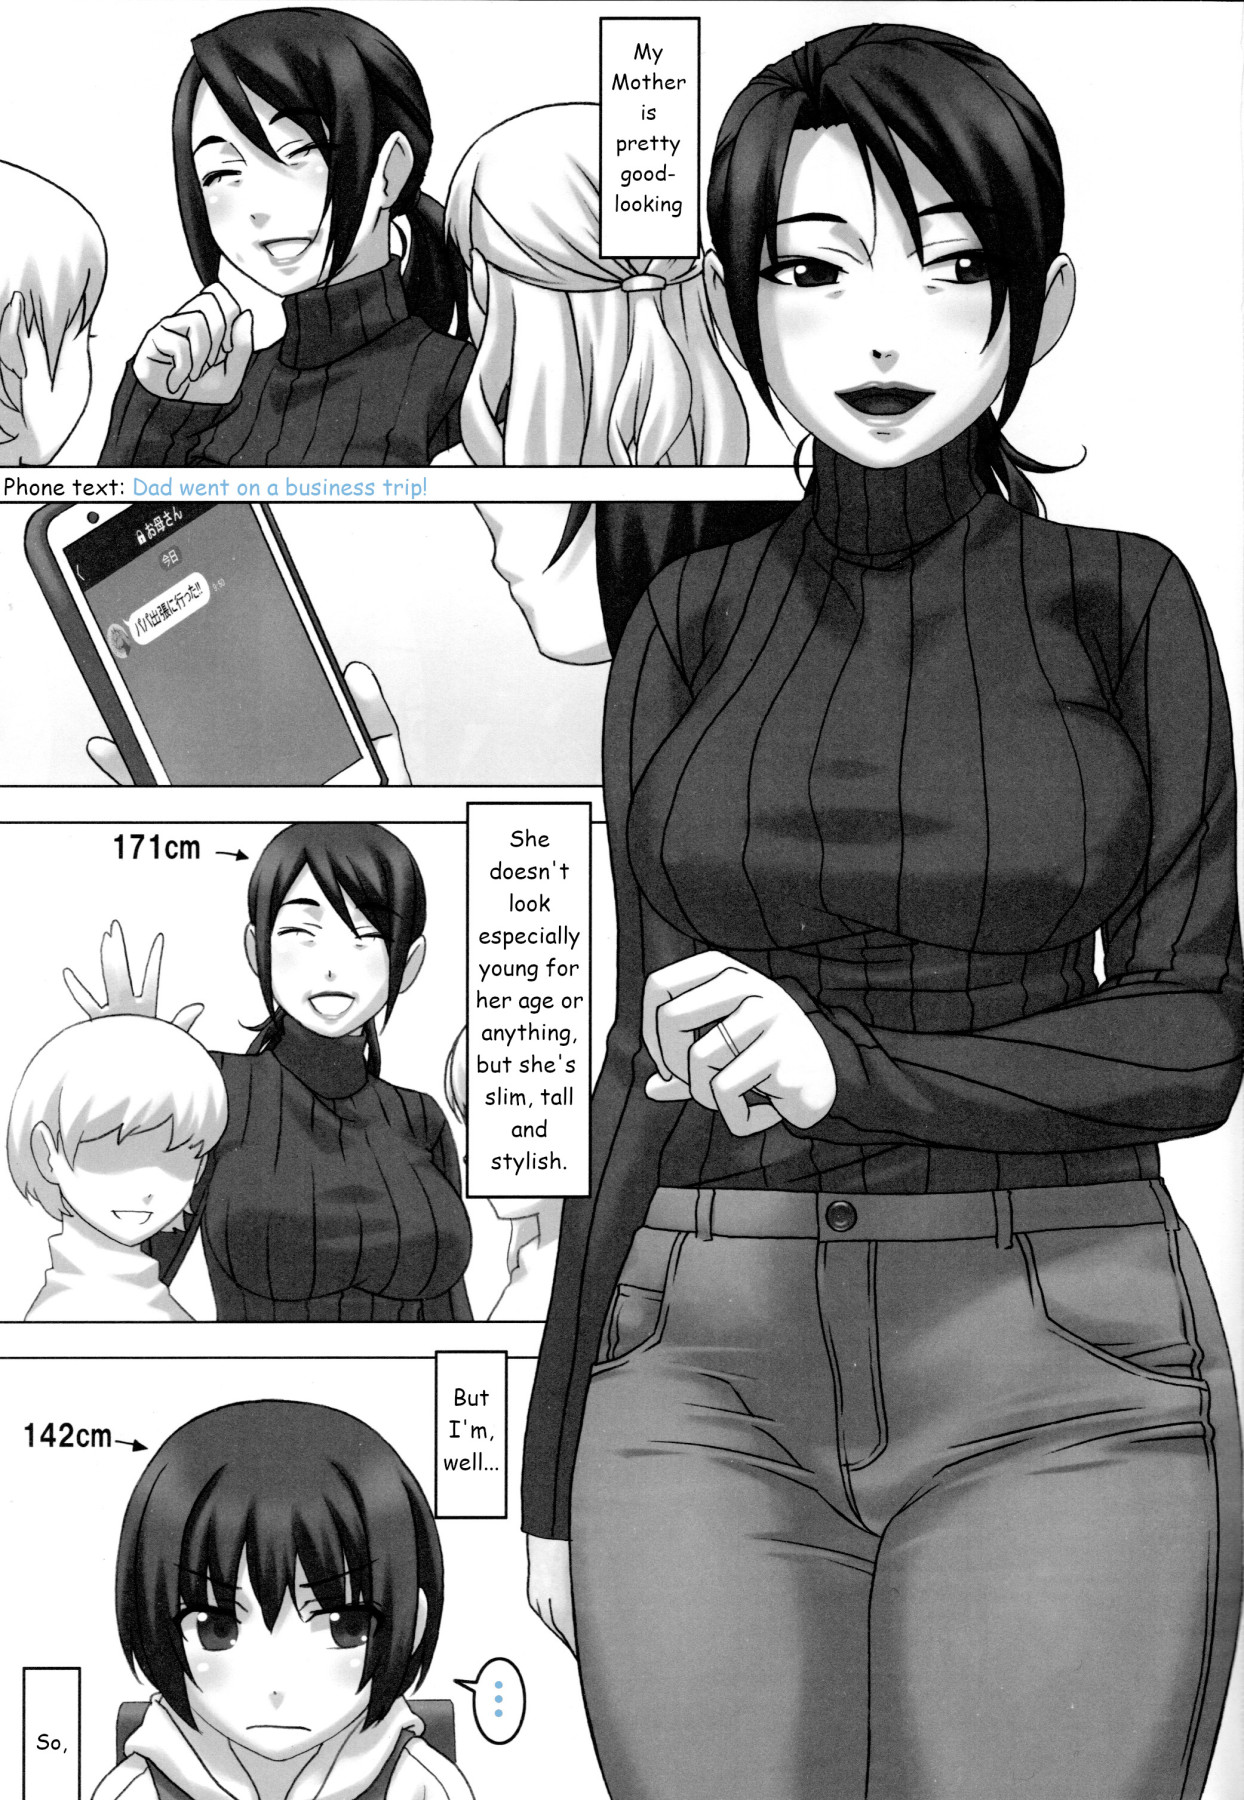 Hentai Manga Comic-Me and Mother-Read-2